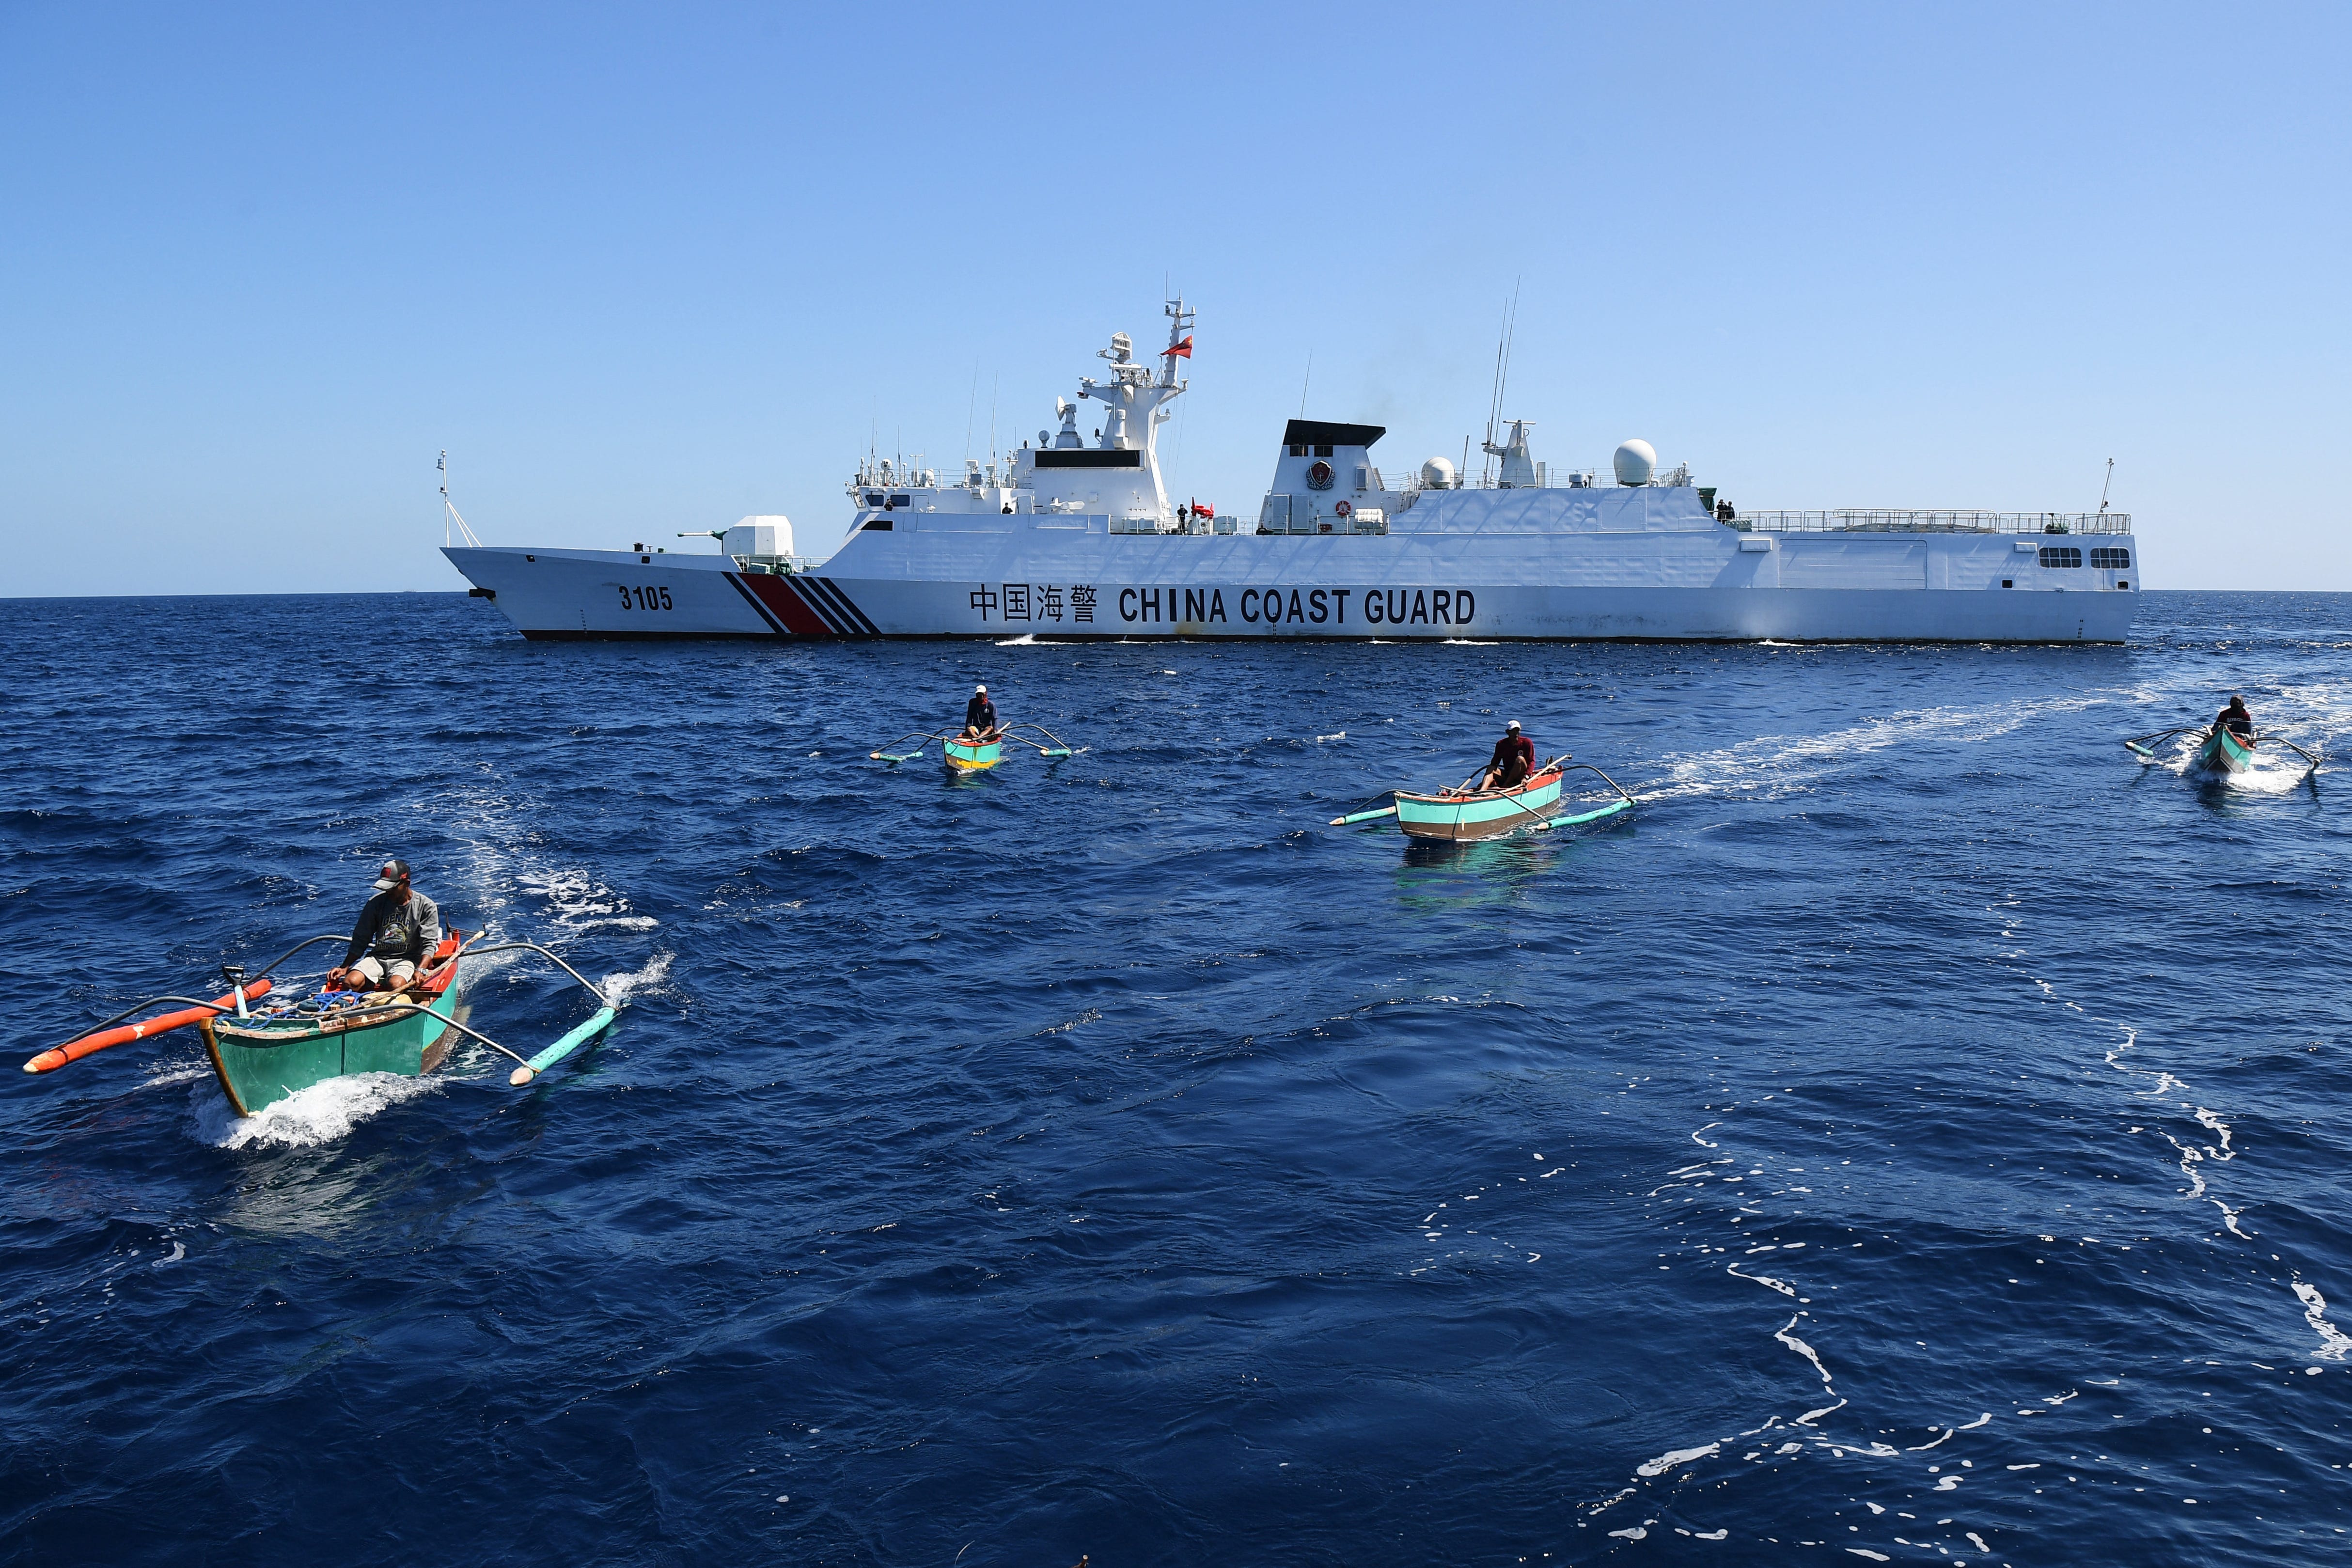 Philippinische Fischer an Bord ihrer Holzboote segeln an einem Schiff der chinesischen Küstenwache in der Nähe des von China kontrollierten Scarborough Shoal in umstrittenen Gewässern des Südchinesischen Meeres vorbei.